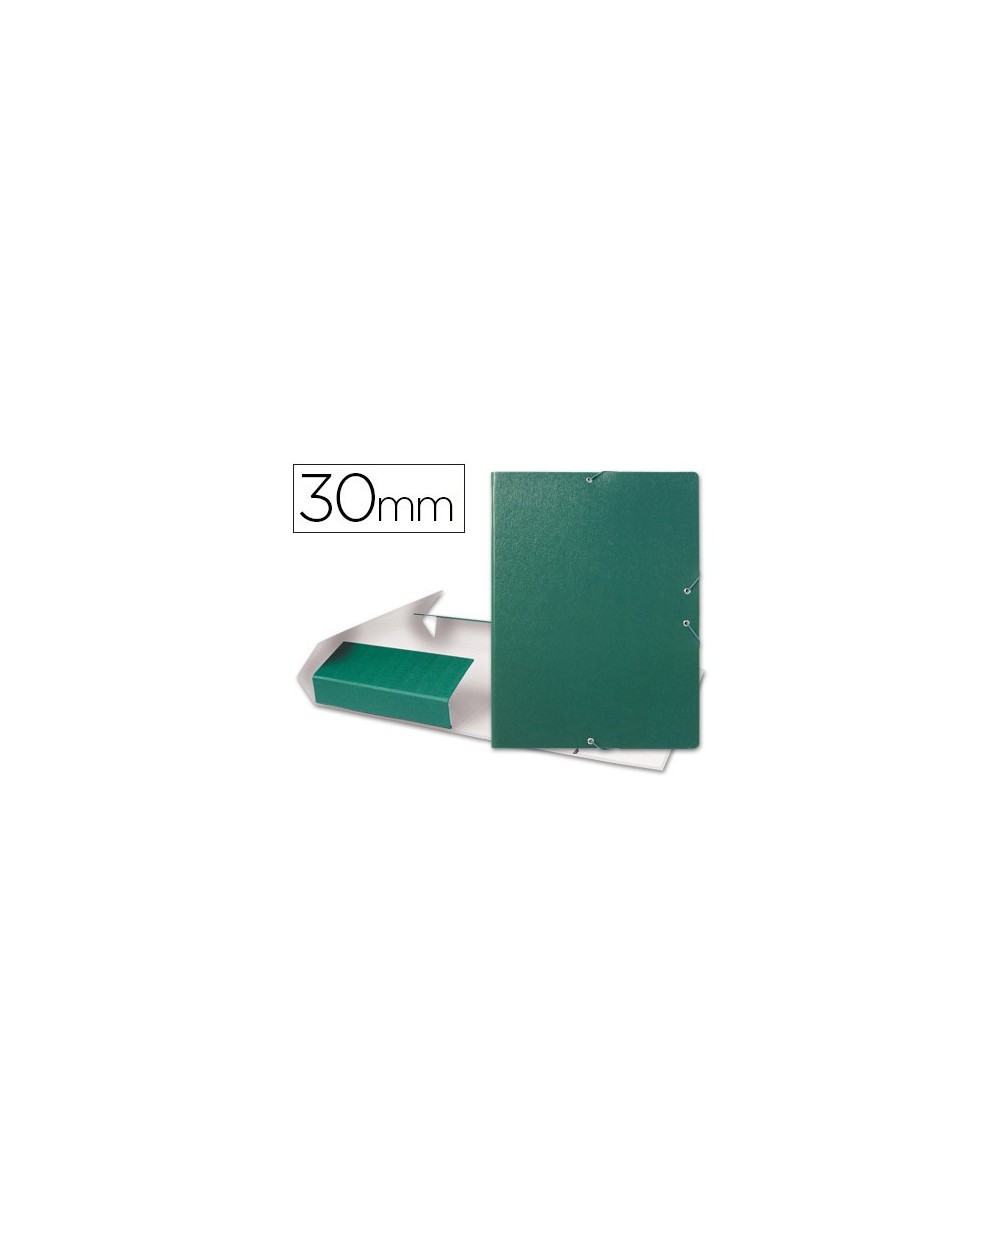 Carpeta proyectos liderpapel folio lomo 30mm carton gofrado verde